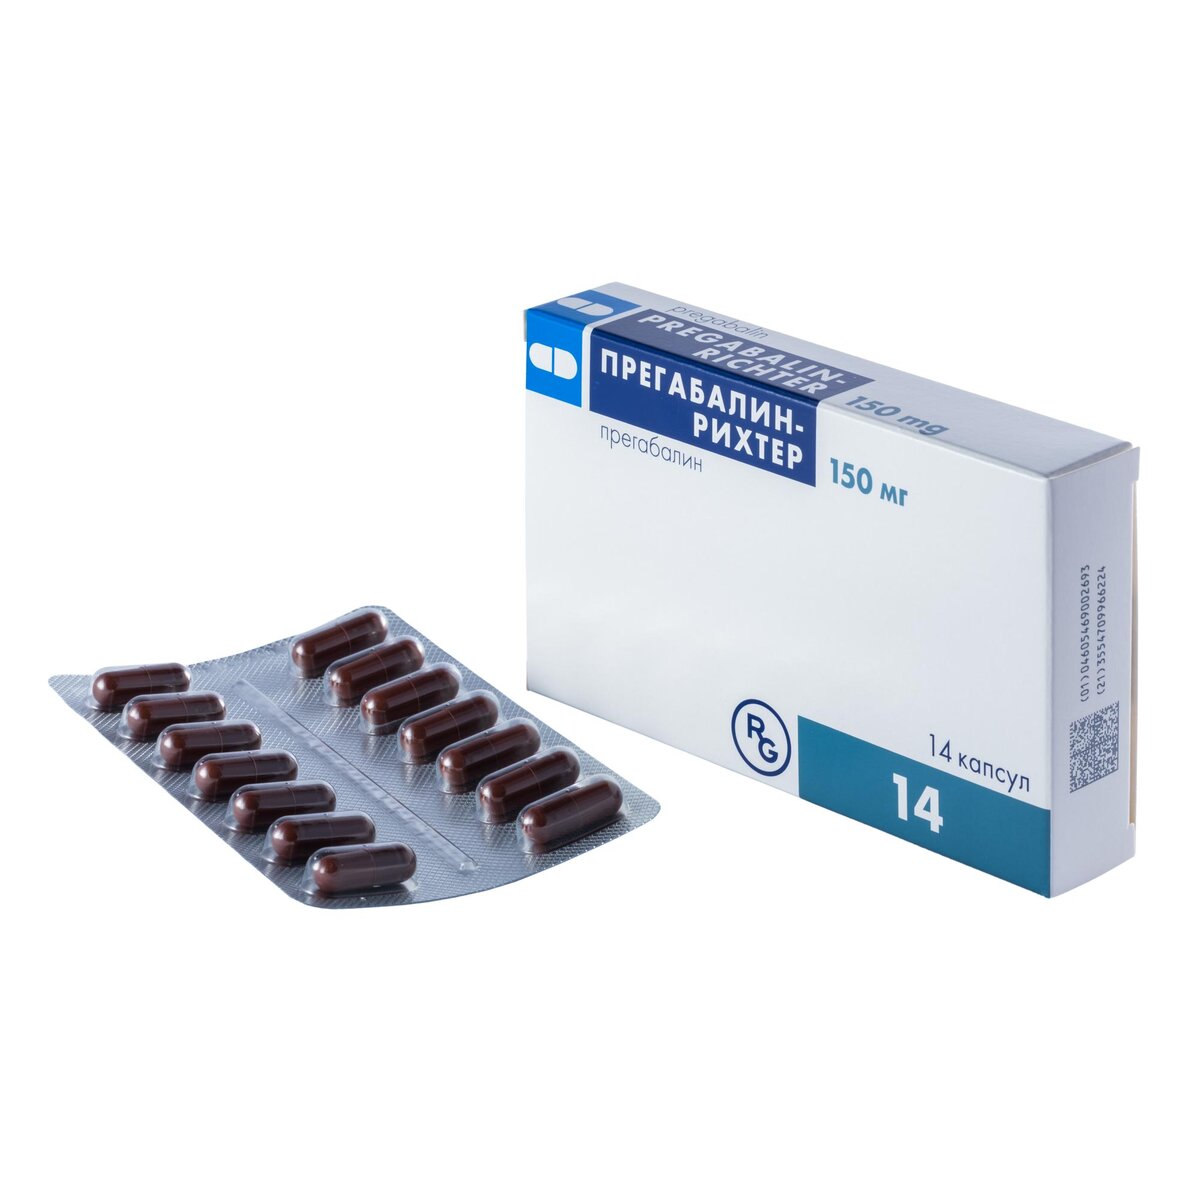 Прегабалин-Рихтер капсулы 150 мг 14 шт.